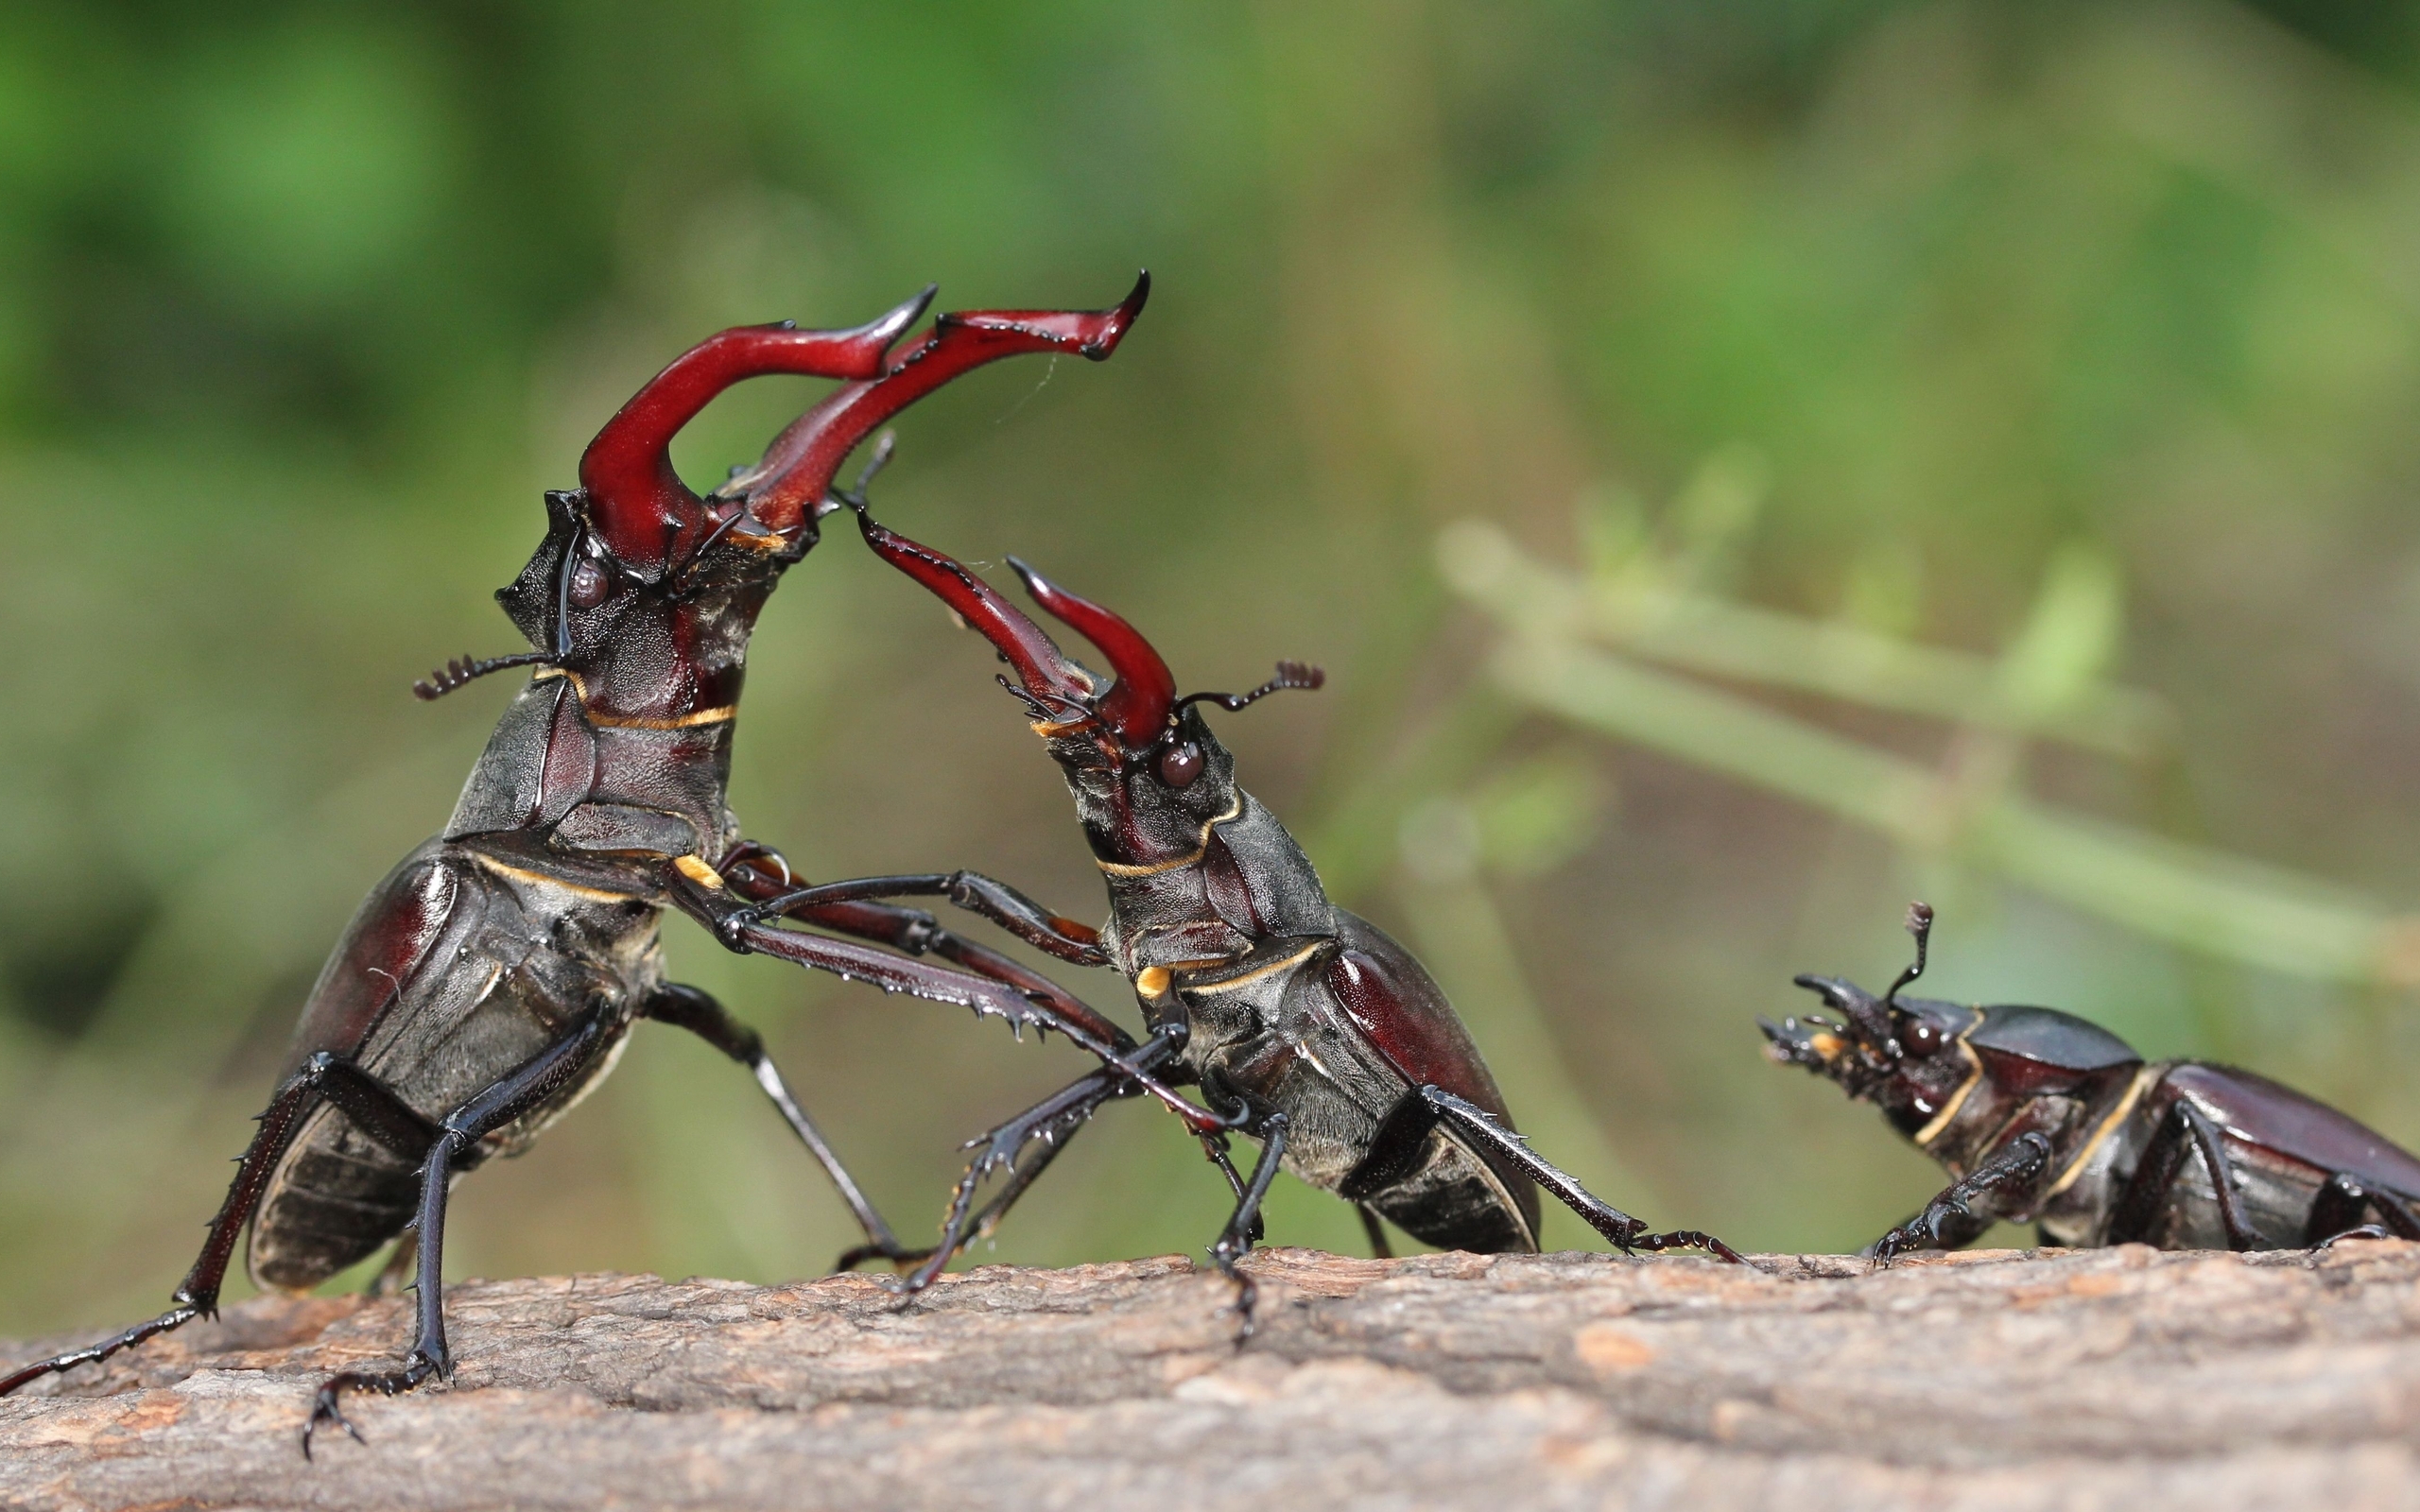 Картинка: Жук-олень, насекомые, борьба, схватка